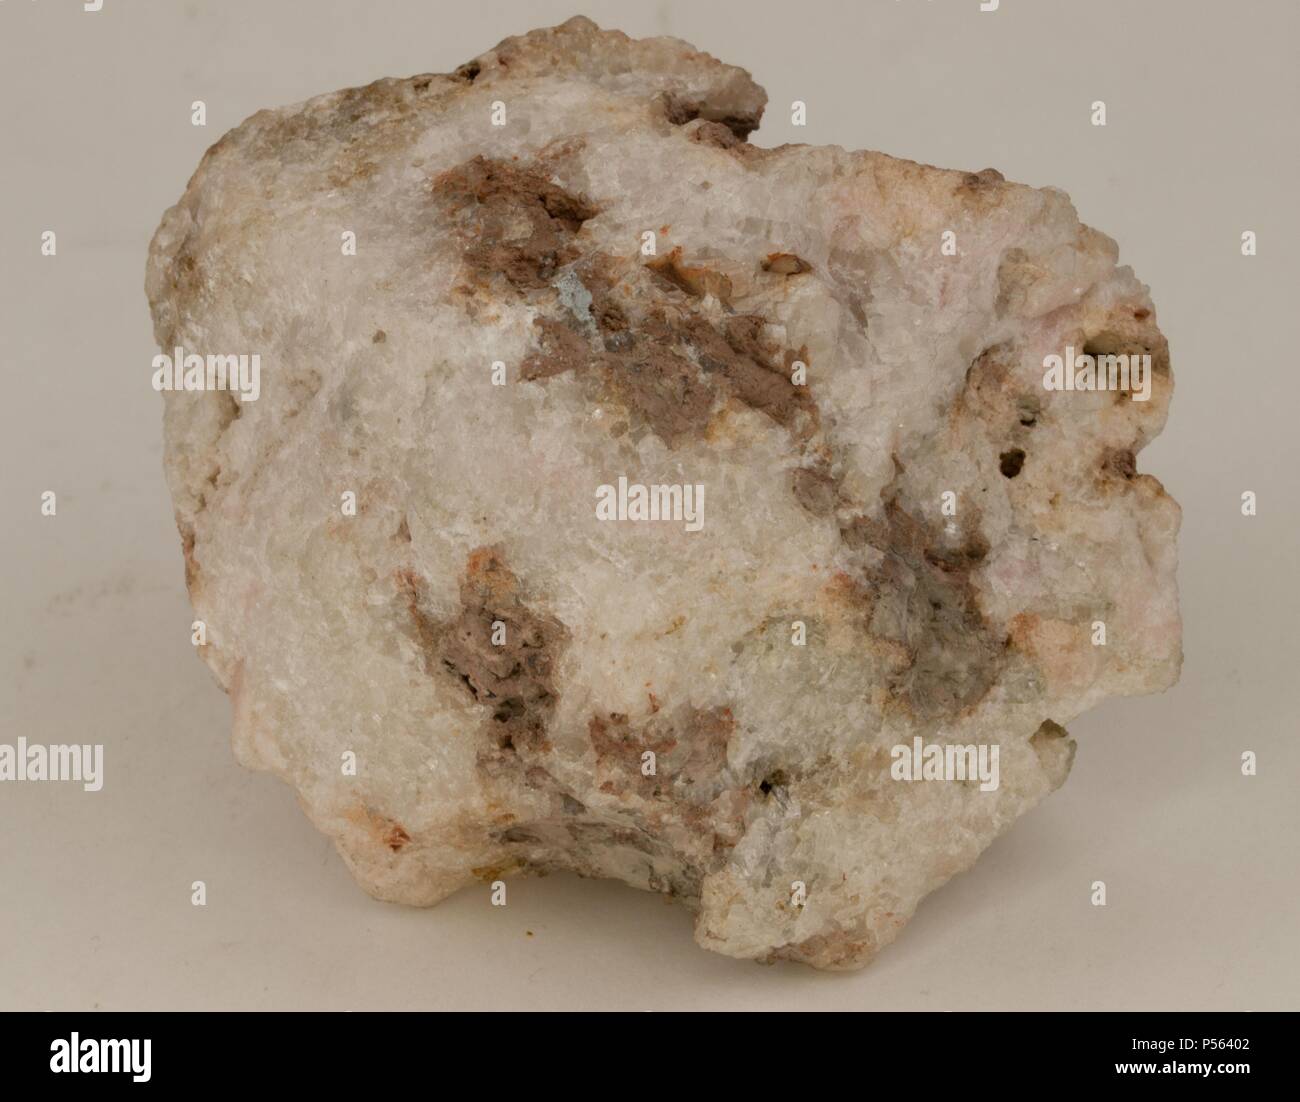 TUGTUPITA. Mineral de la clase de silicatos. Ejemplar procedente de Tugtup, Groenlandia. Stock Photo